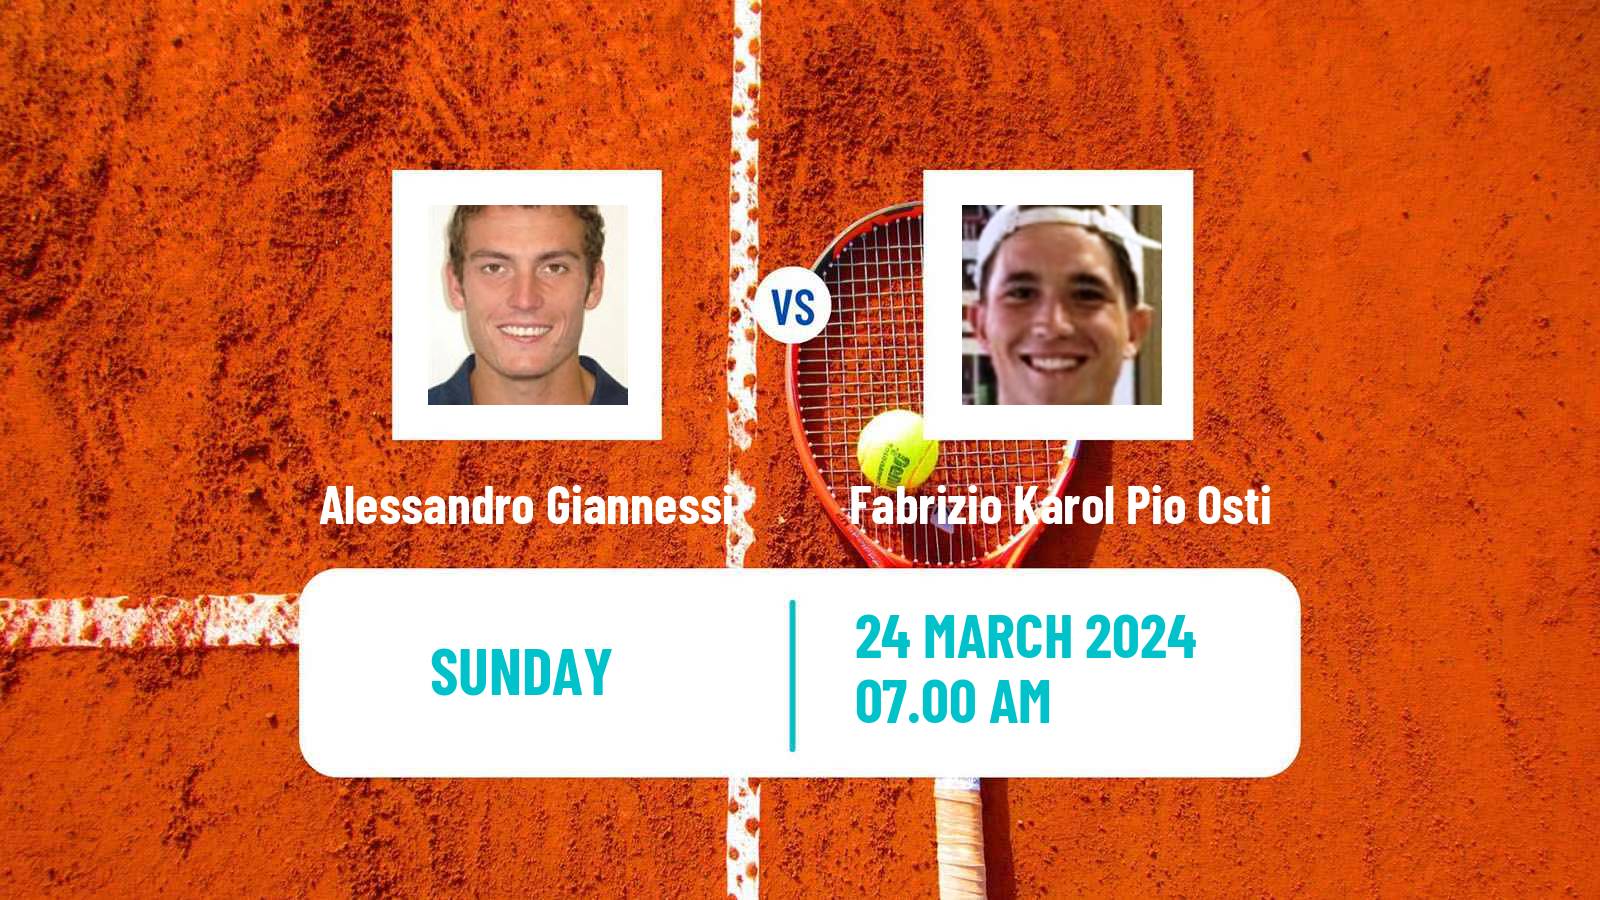 Tennis Naples 3 Challenger Men Alessandro Giannessi - Fabrizio Karol Pio Osti